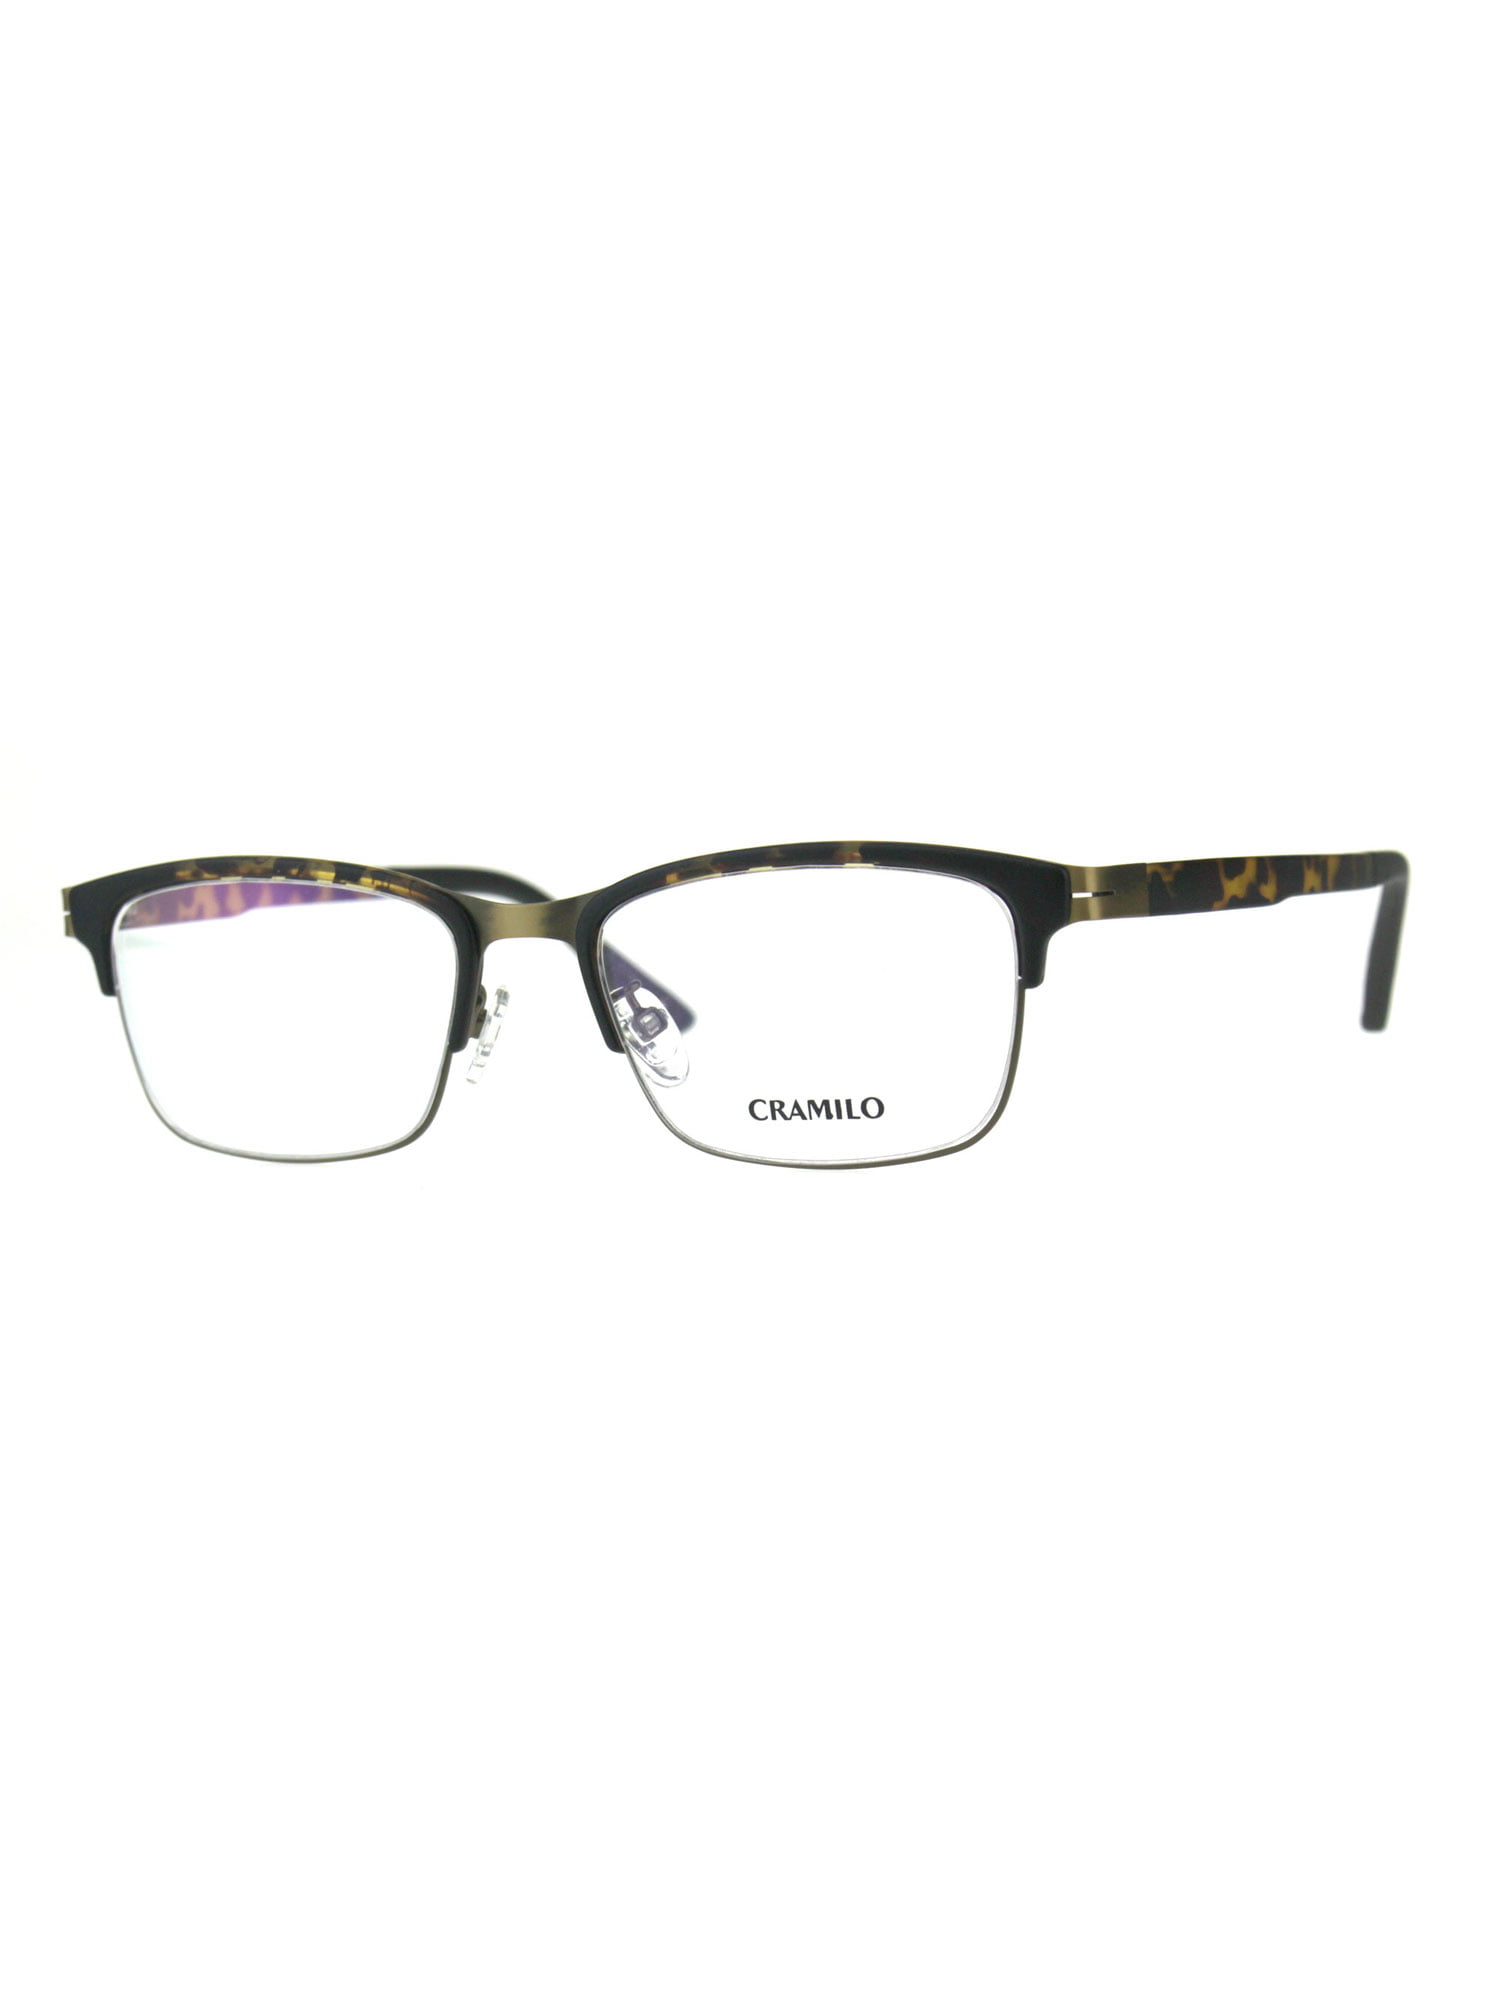 Case Glasses Frame for Men Metal Half Frame Rectangular Clear Lens Non-prescription